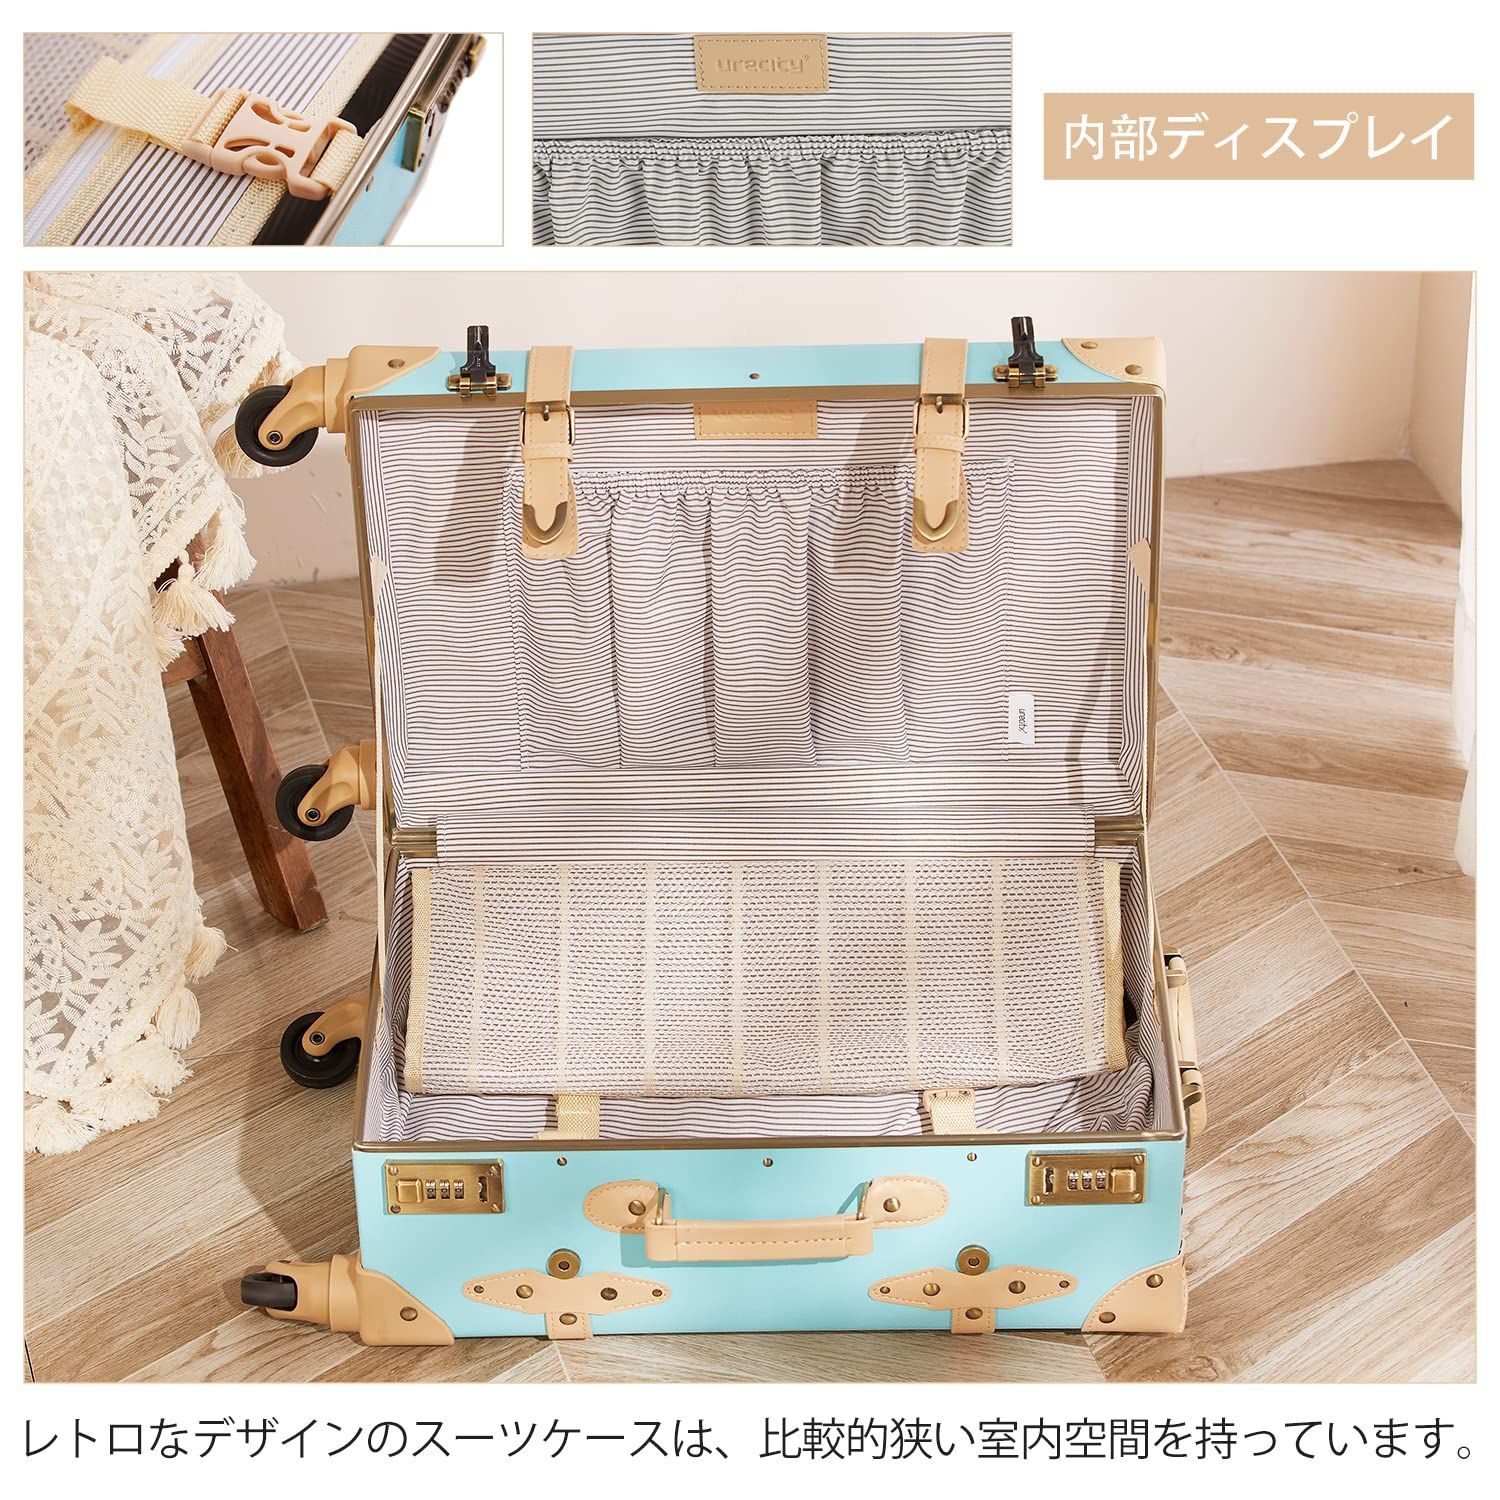 新品 スーツケースかわいい クラシック キャリーケース かわいい 